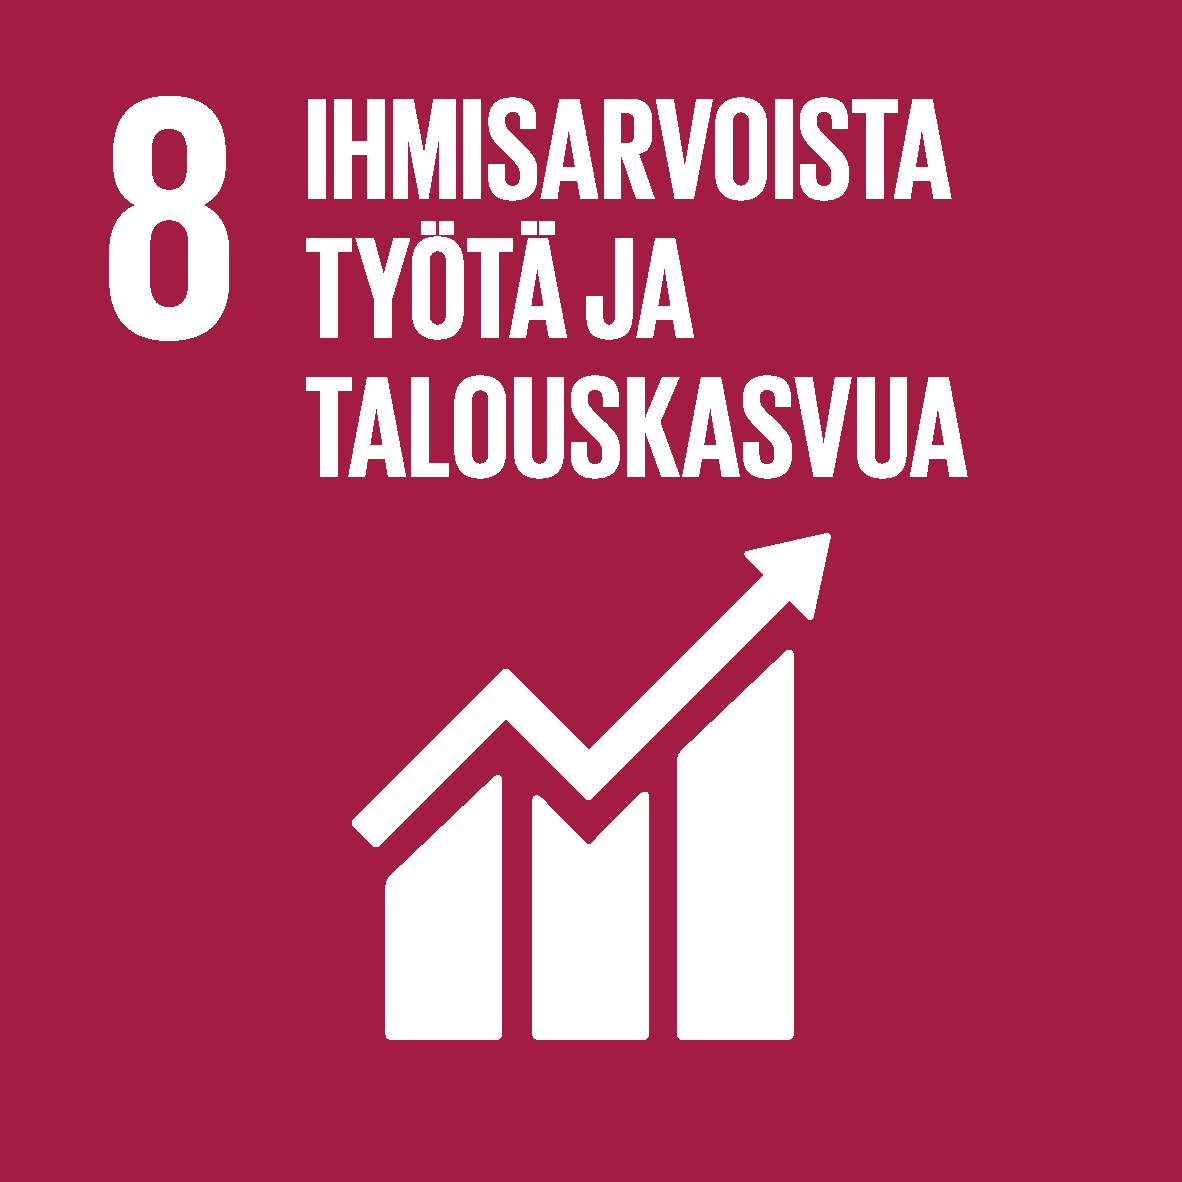 Kestävän kehityksen tavoite 8: ihmisarvoista työtä ja talouskasvua.